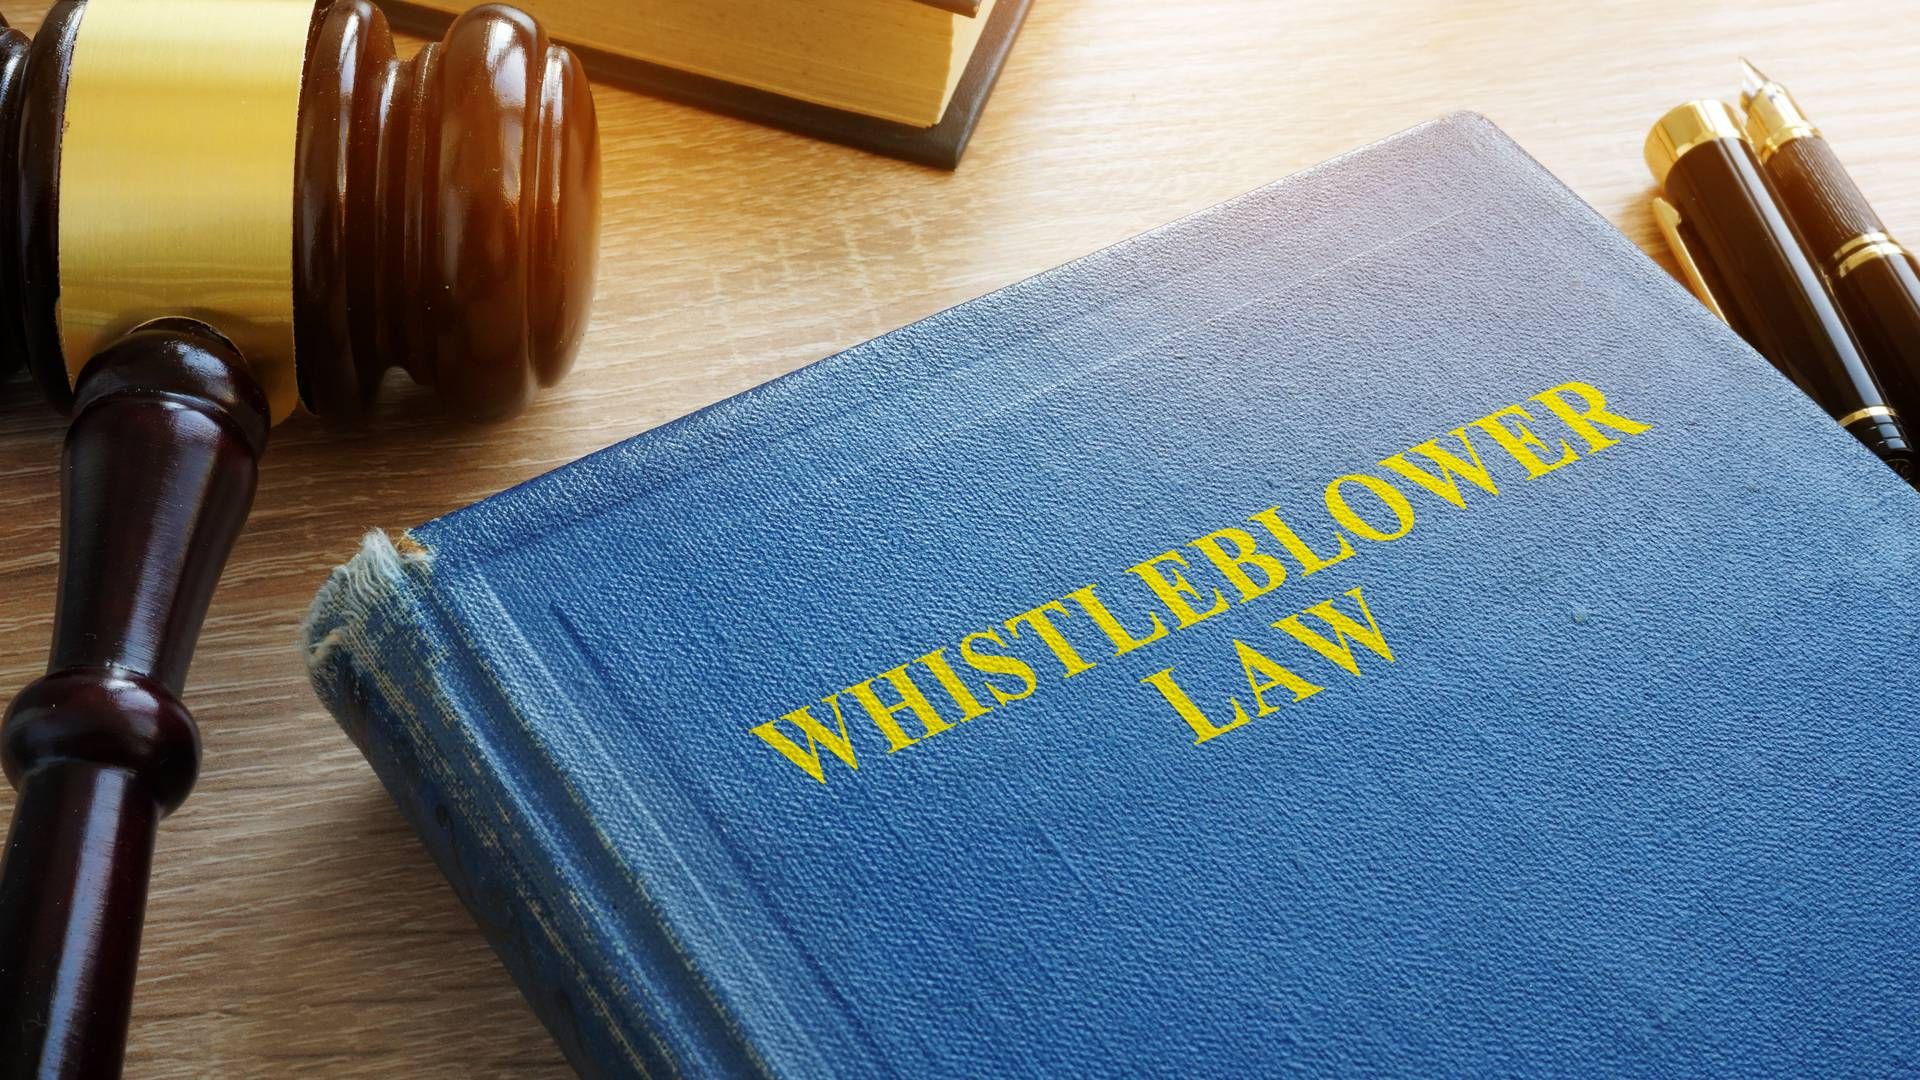 Innovationsfonden har ændret whistleblowerordning efter kritik. | Foto: Colourbox